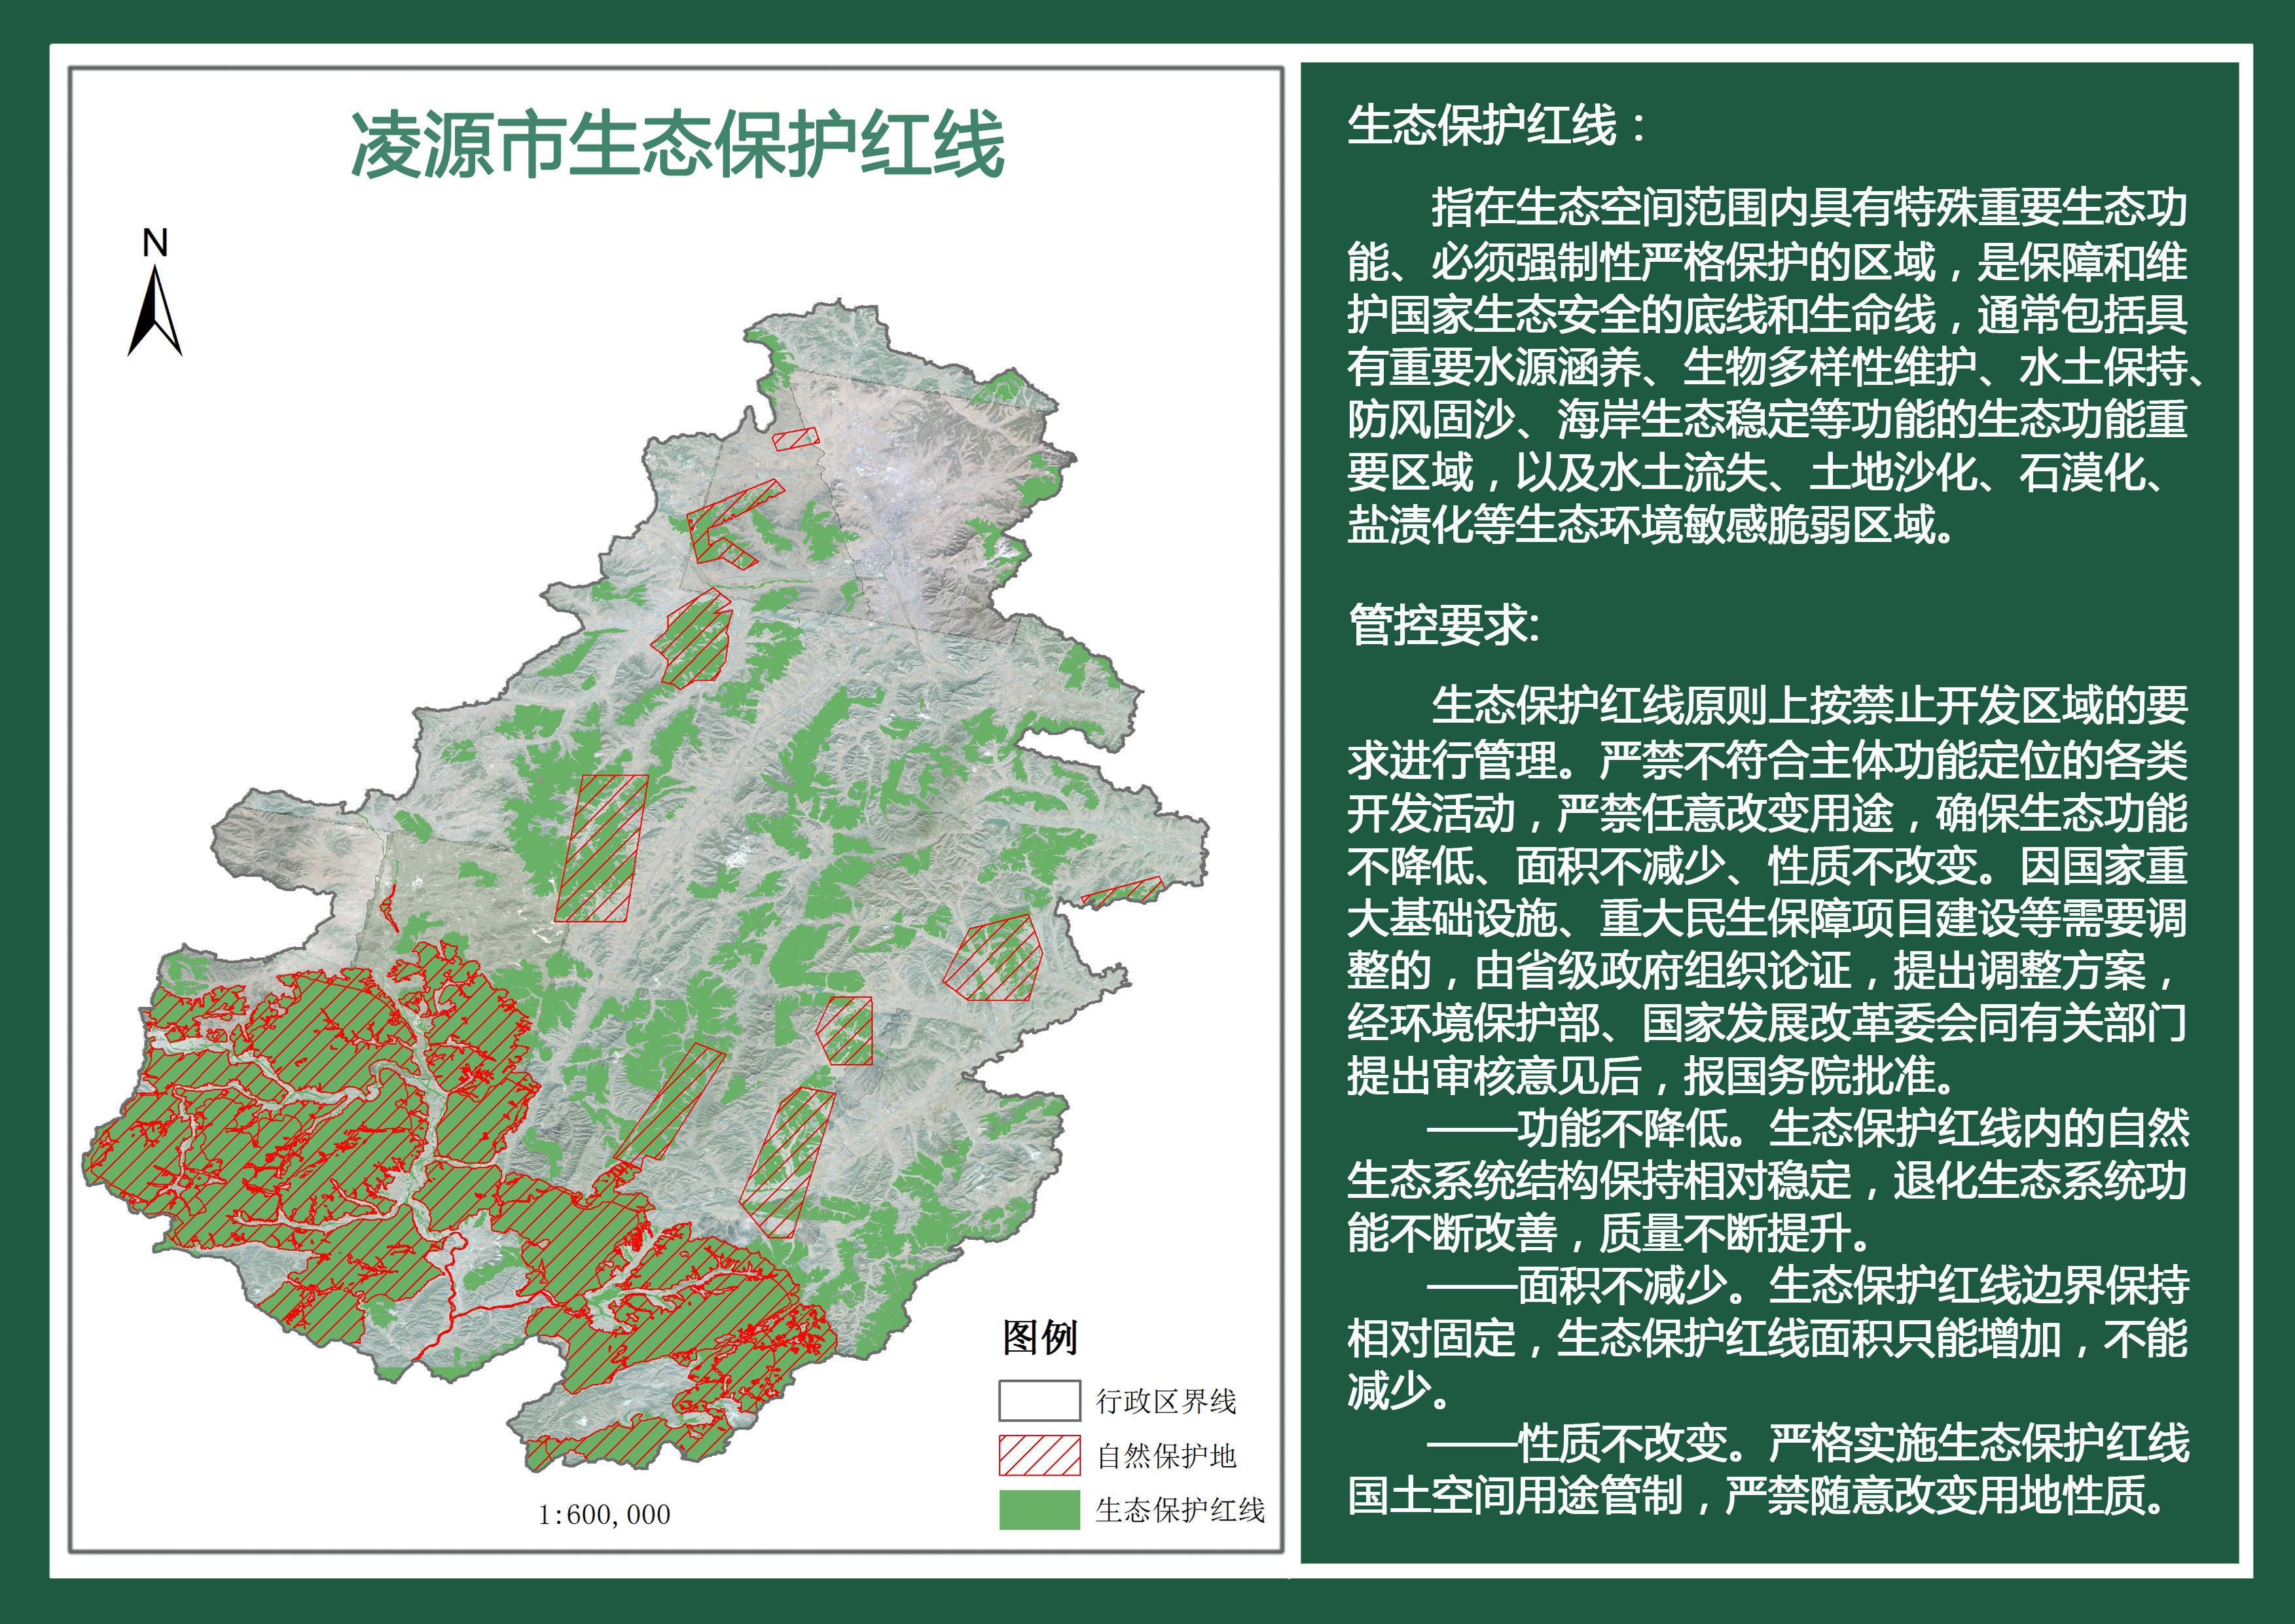 凌源市生态保护红线范围图.jpg